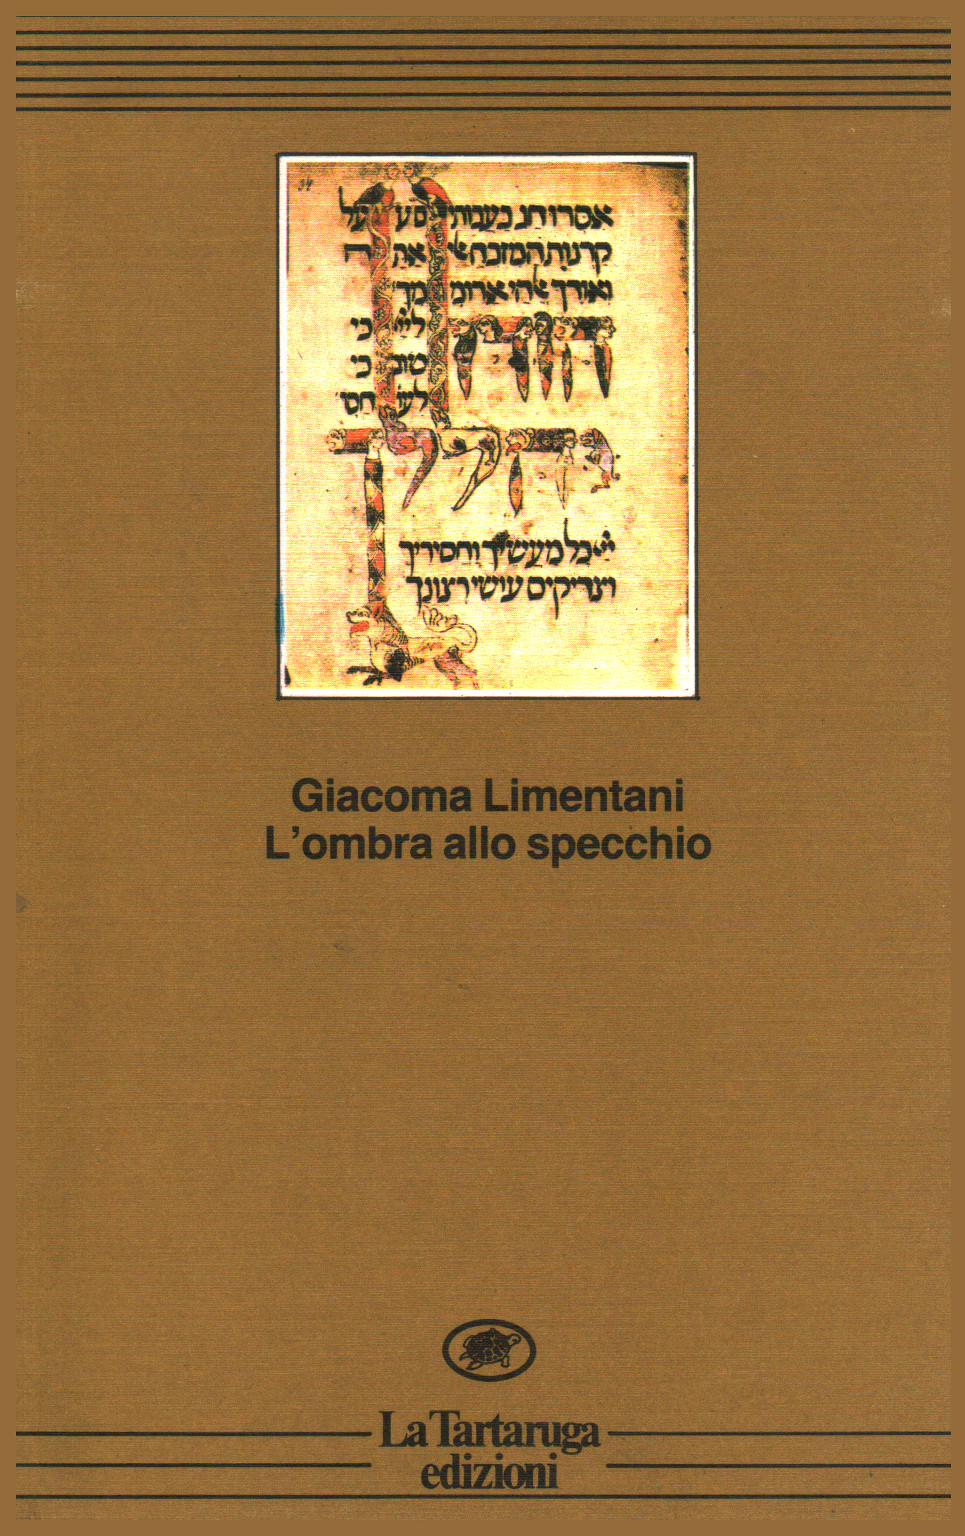 L'ombra allo specchio, Giacoma Limentani